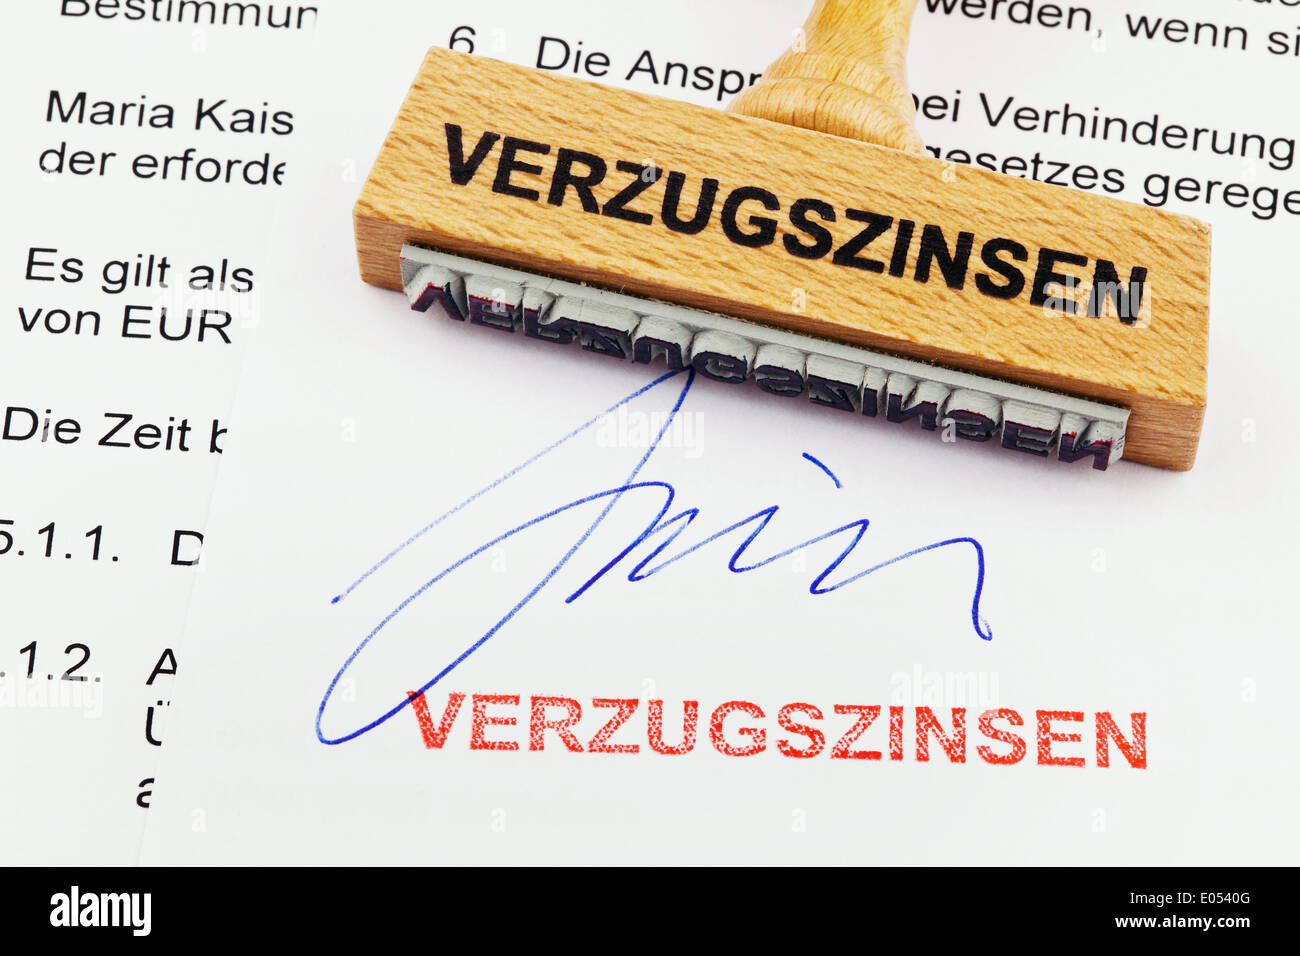 Un sello de madera se encuentra en un documento. Sello alemán: Intereses sobre las cuotas atrasadas, Ein Stempel aus Holz liegt auf einem Dokument. Deutsche Foto de stock